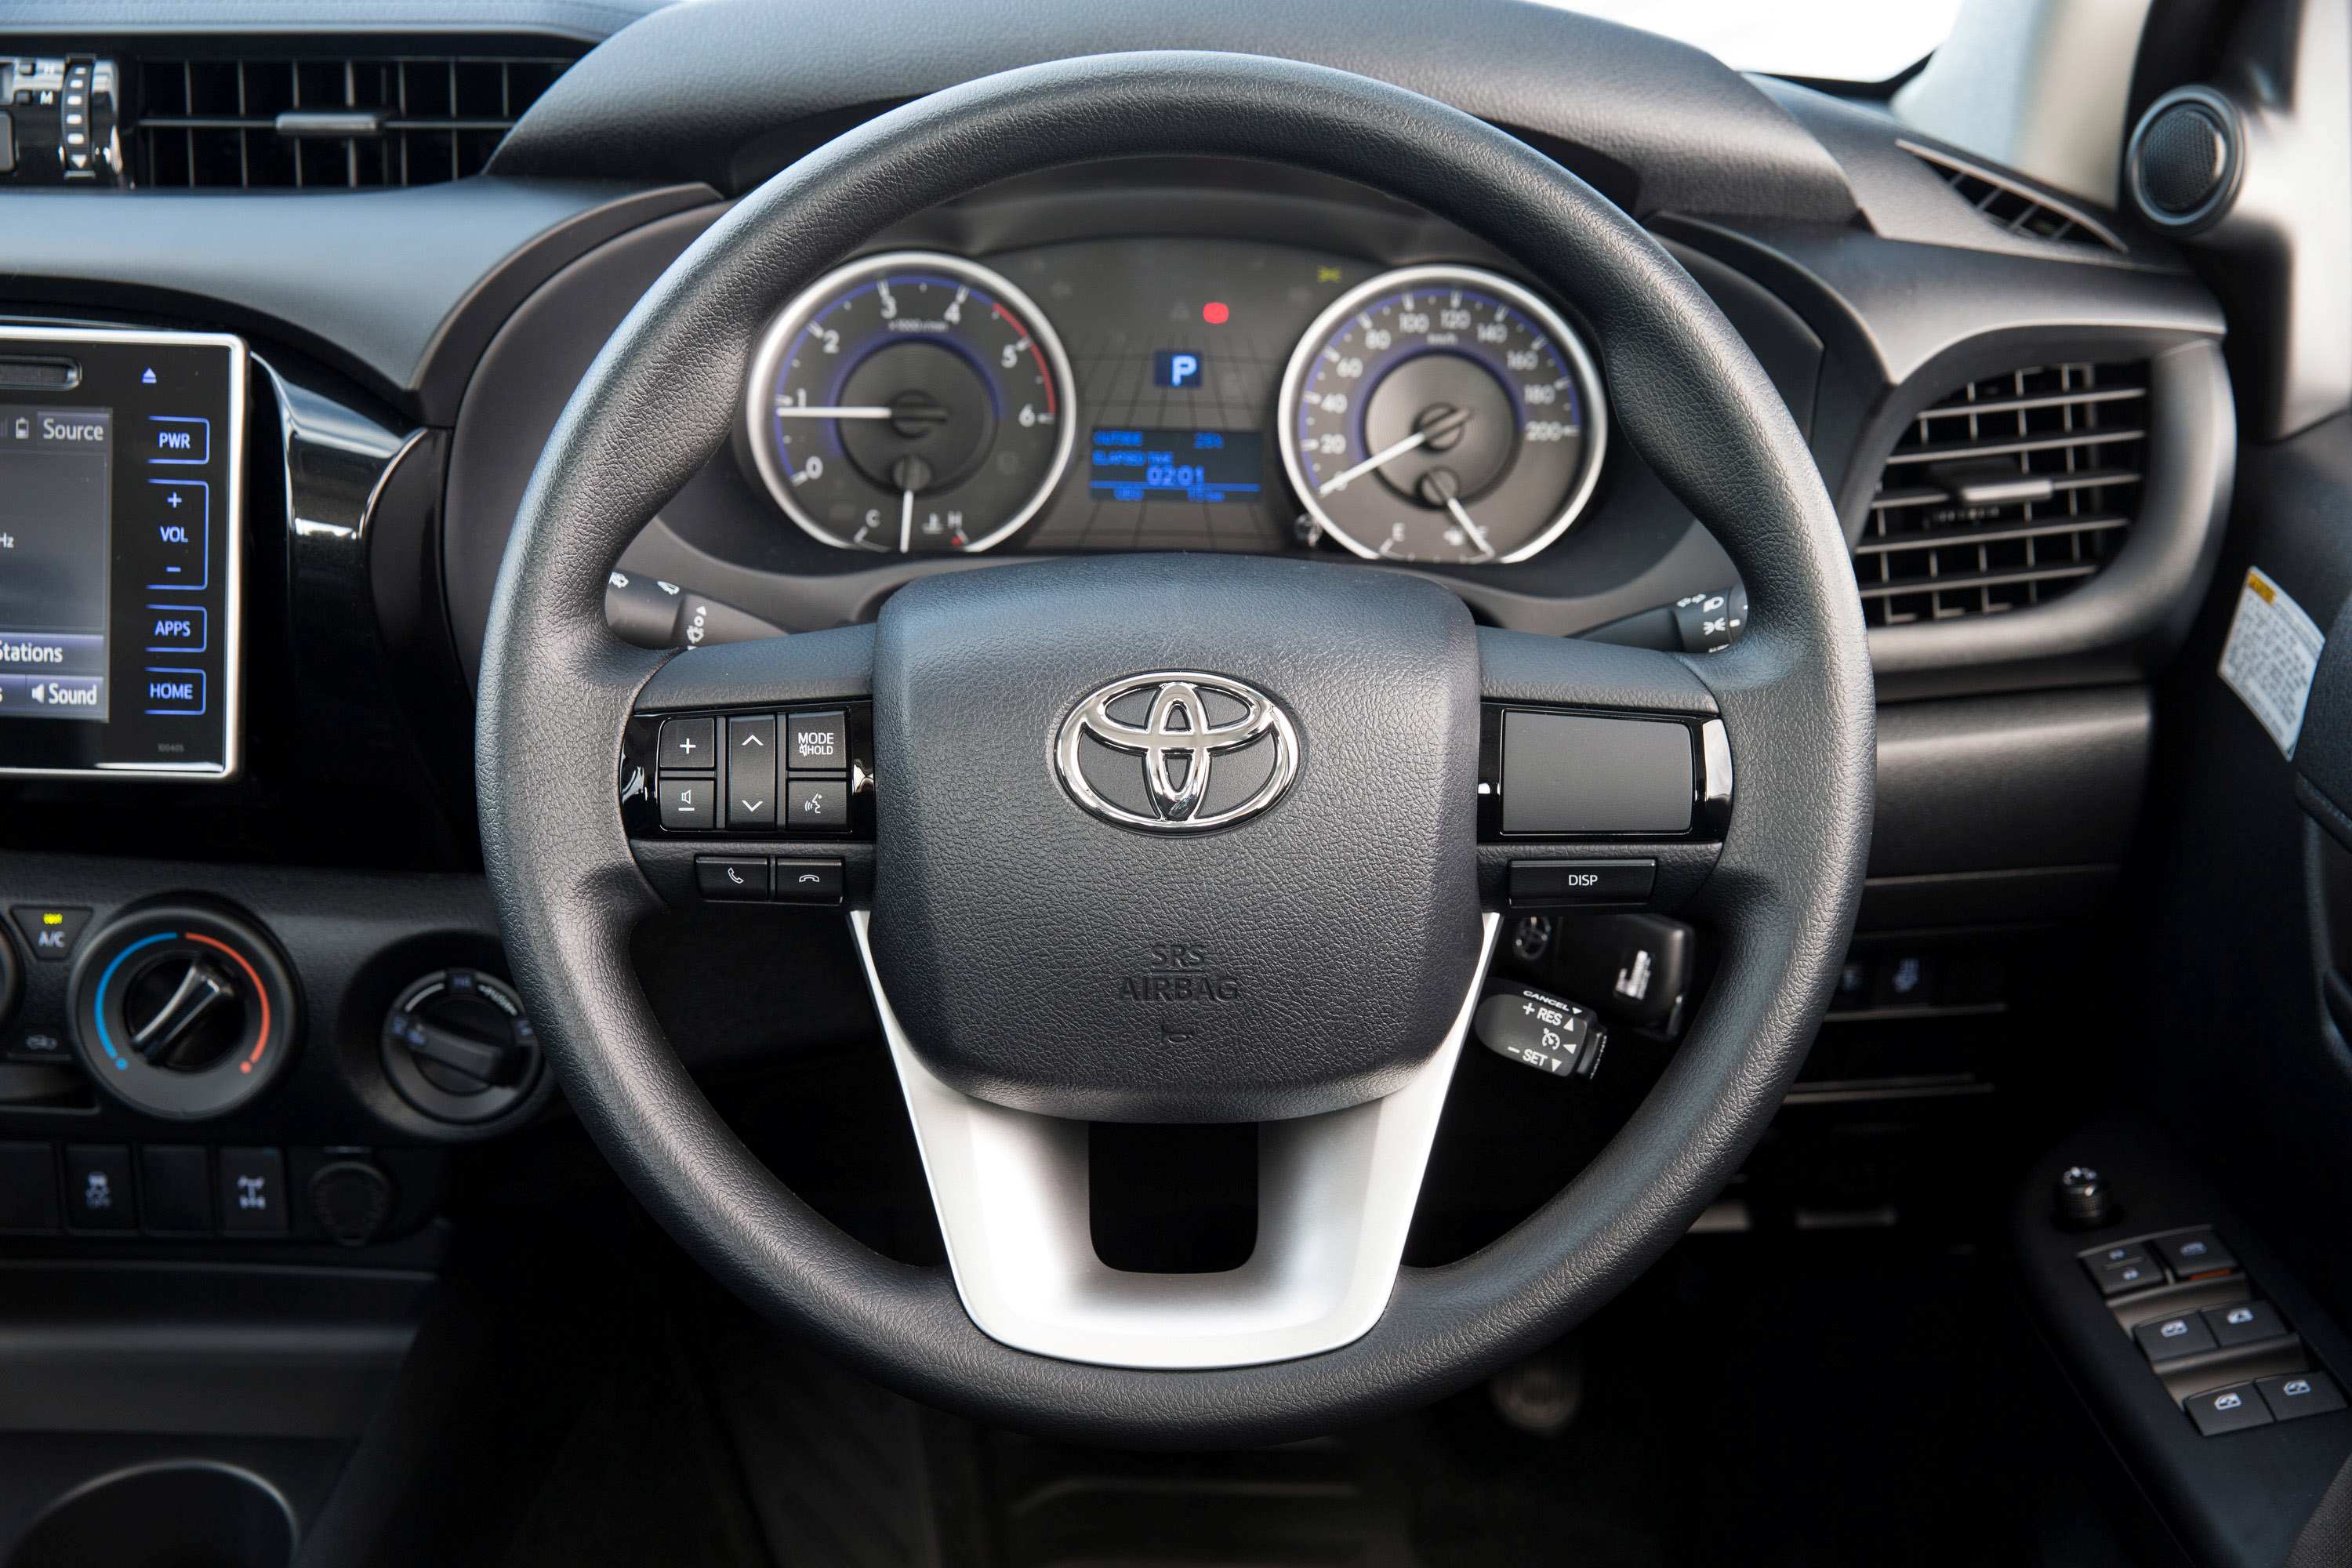 2019 Toyota HiLux 4x4 SR double cab